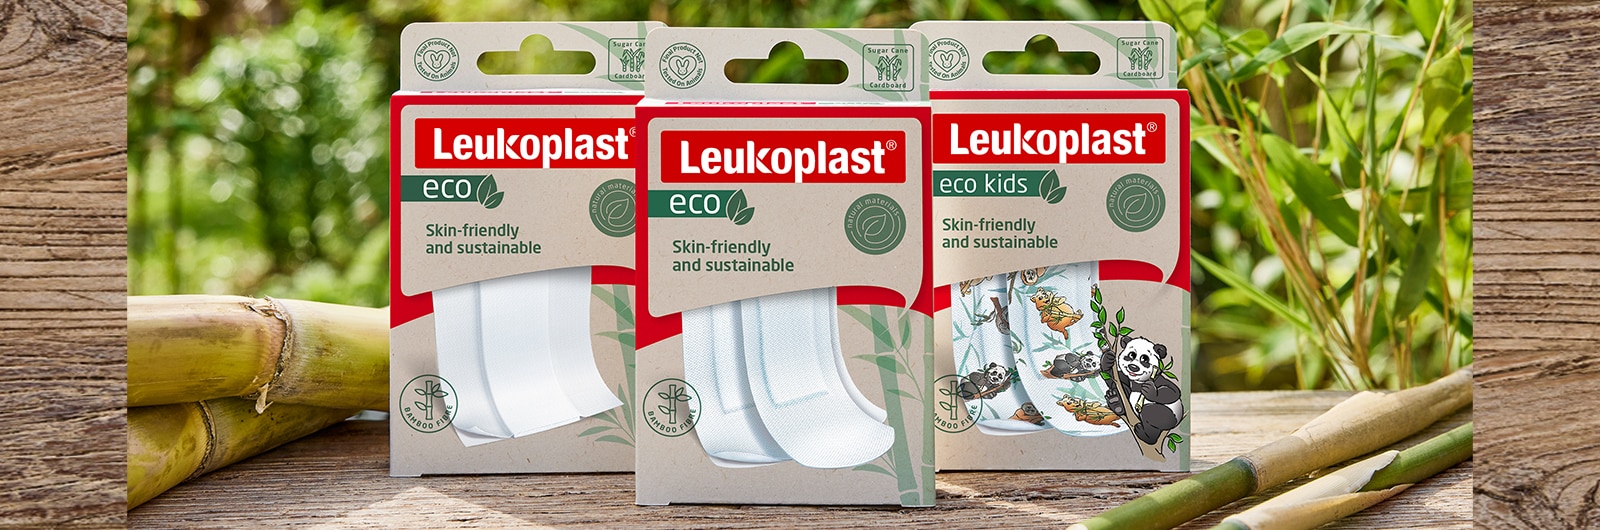 A képen a Leukoplast eco kiszerelések láthatók. 